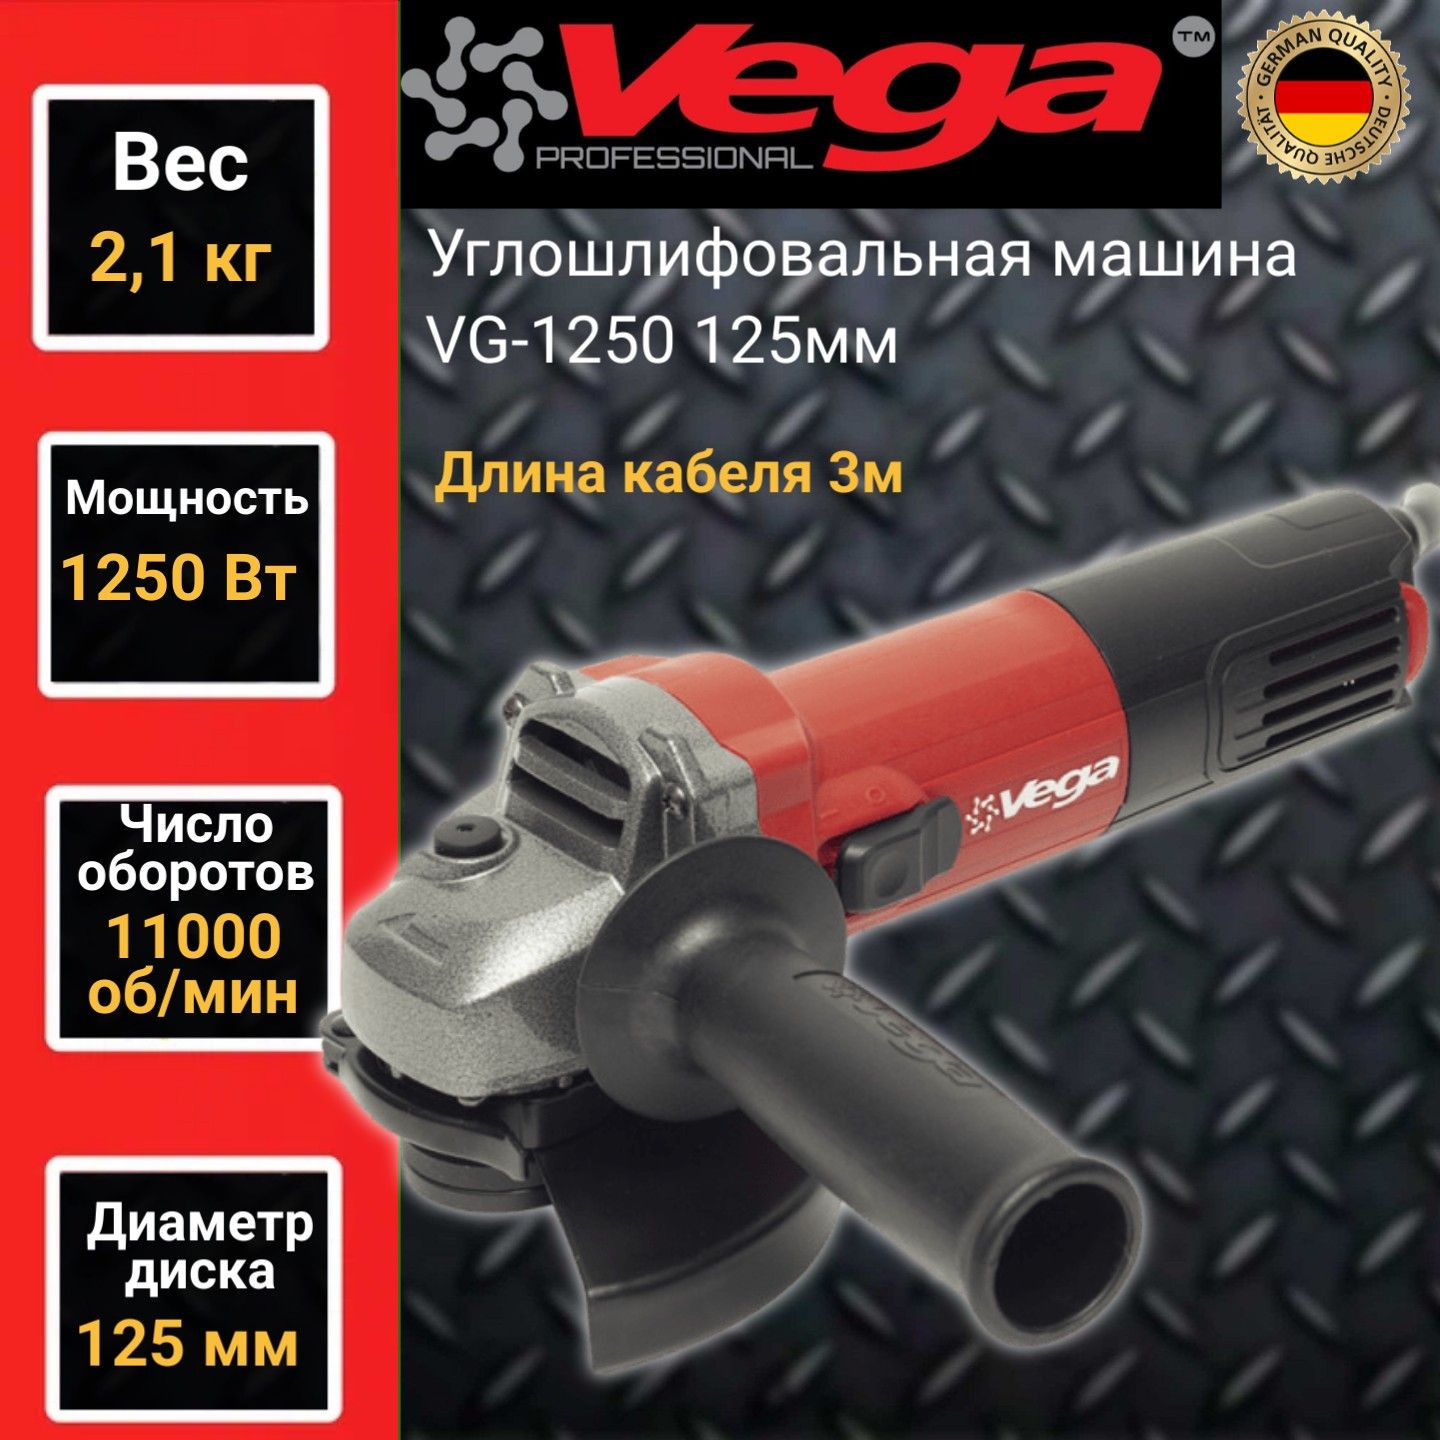 Углошлифовальная машина болгарка Vega Professional VG 1250, 125мм круг,1250Вт,11000об/мин машина углошлифовальная ушм patriot